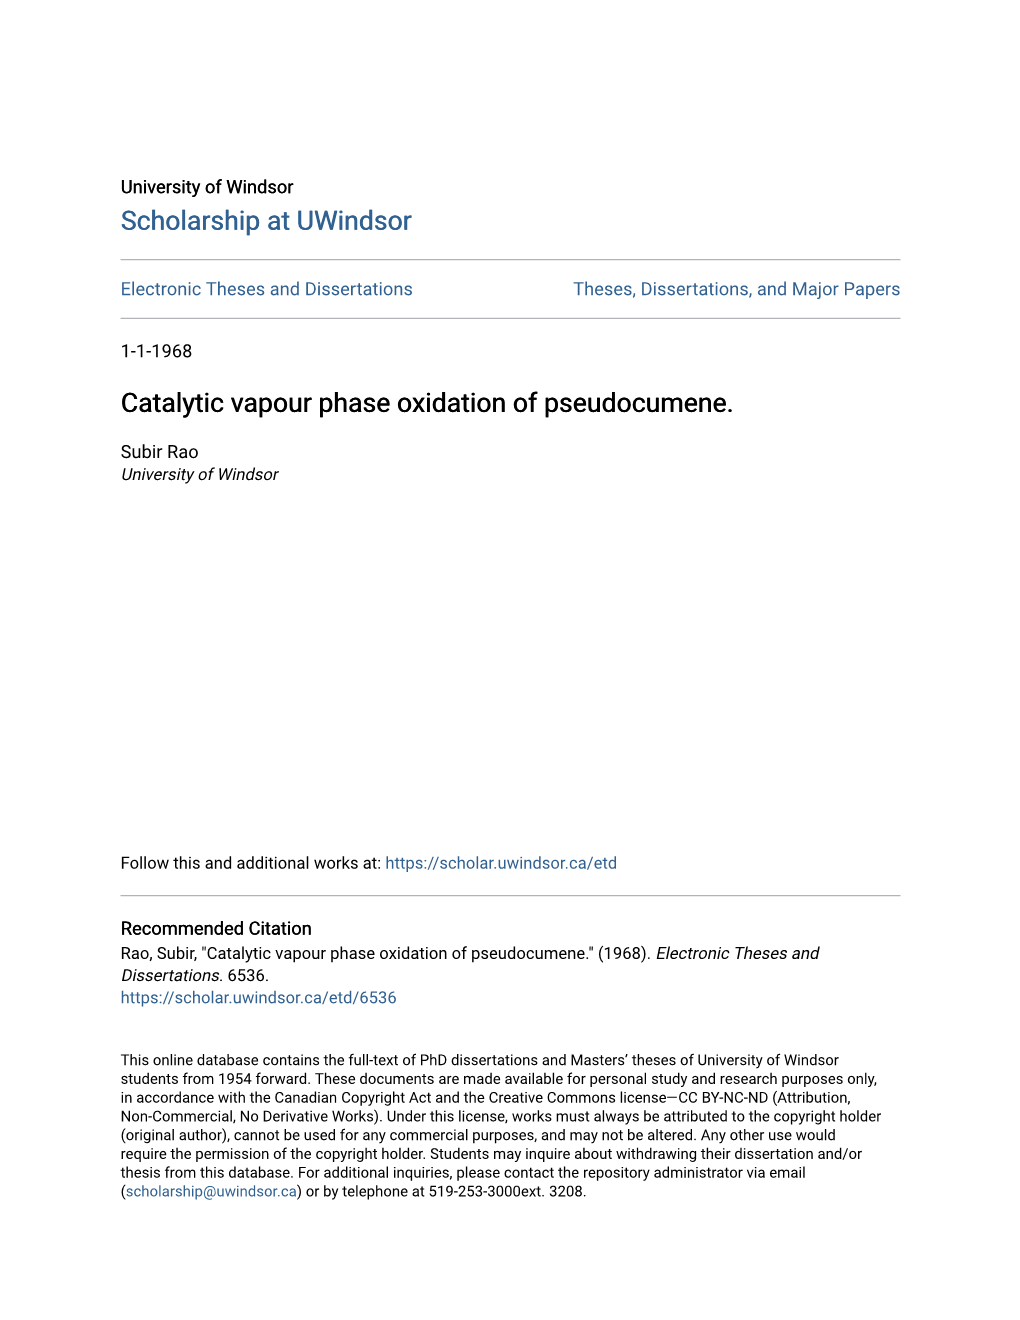 Catalytic Vapour Phase Oxidation of Pseudocumene